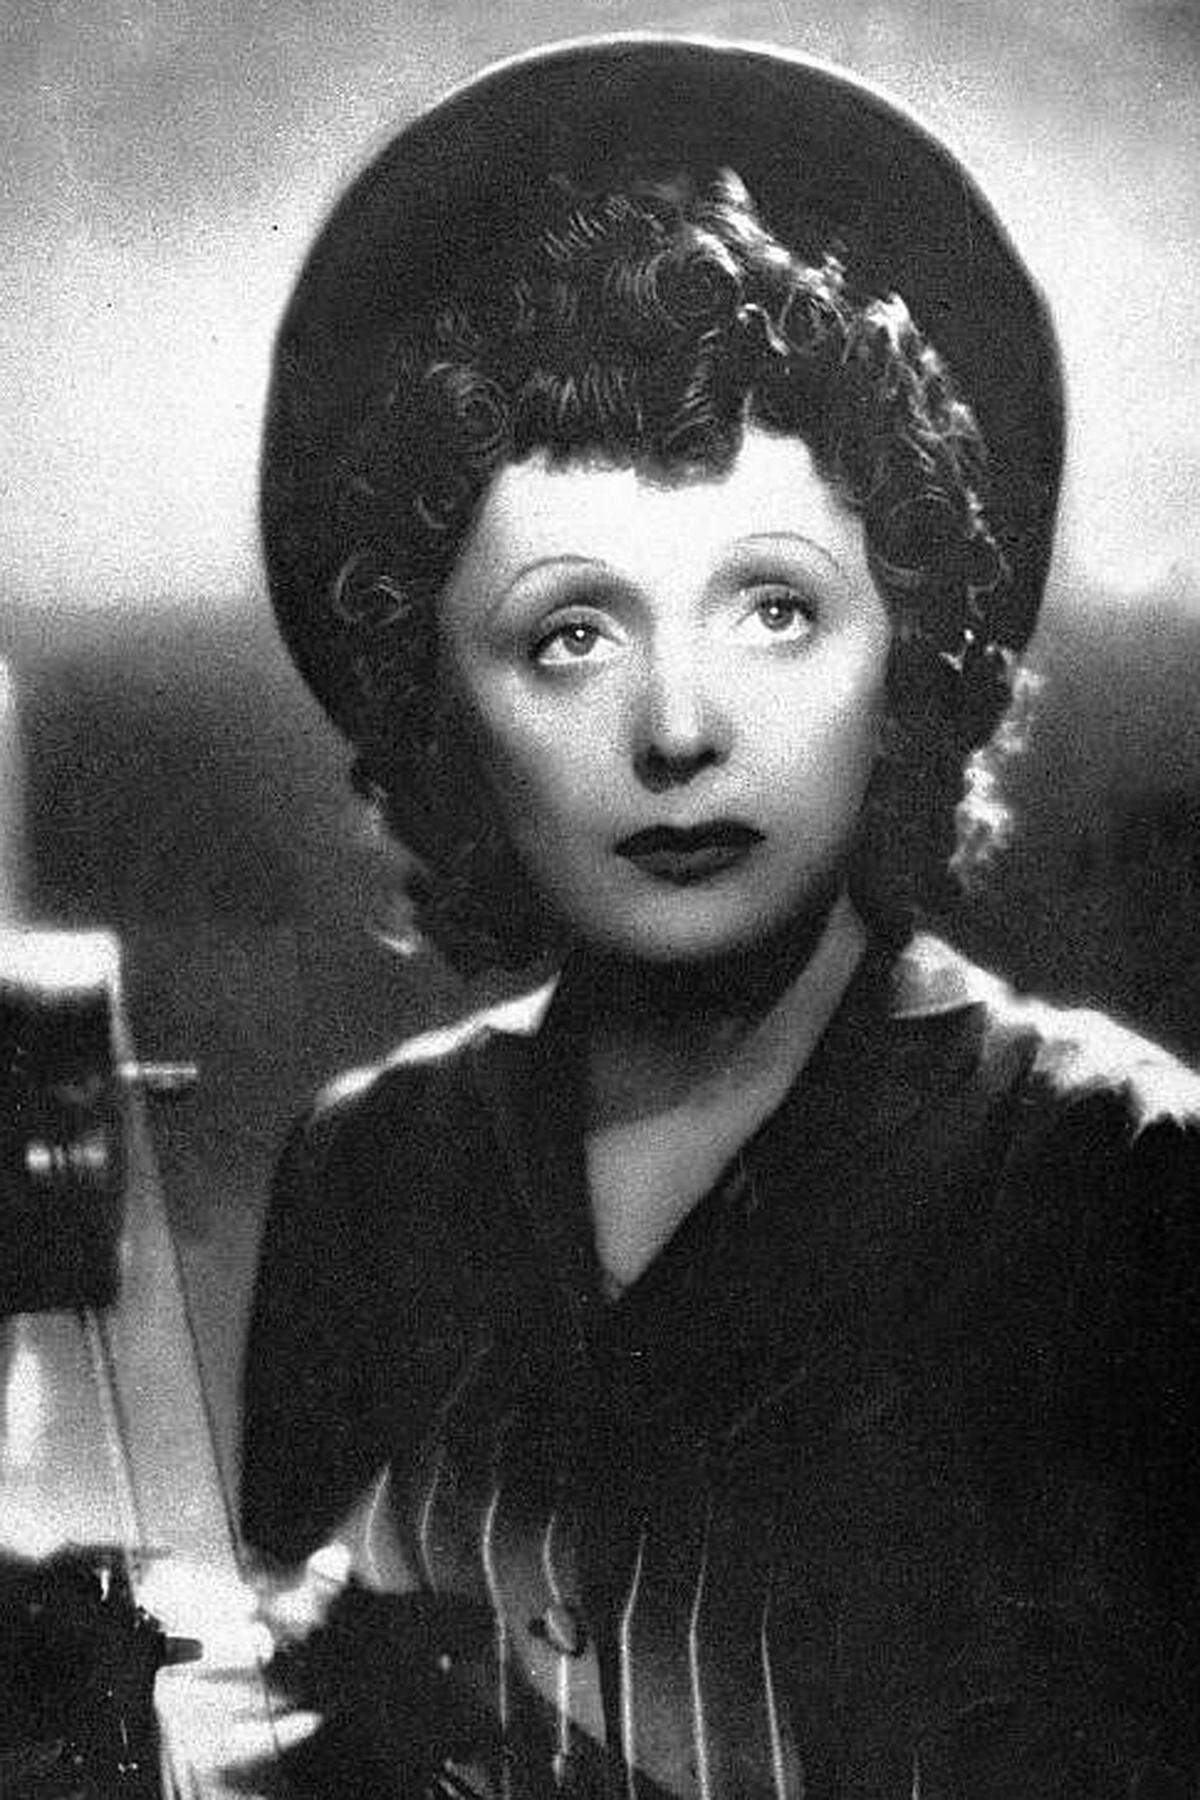 Die Legende besagt, dass Piaf am 19. Dezember 1915 auf der Straße geboren wurde. Sie erzählte diese Mär selbst gerne. Tatsächlich kam sie im Pariser Tenon-Krankenhaus unter dem Namen Edith Giovanna Gassion zur Welt. Ihre Eltern, ein Zirkusartist und eine Sängerin, schickten sie zu den Großeltern in die Normandie. Mit 15 Jahren kam sie nach Paris zurück und wurde Straßenmusikantin.